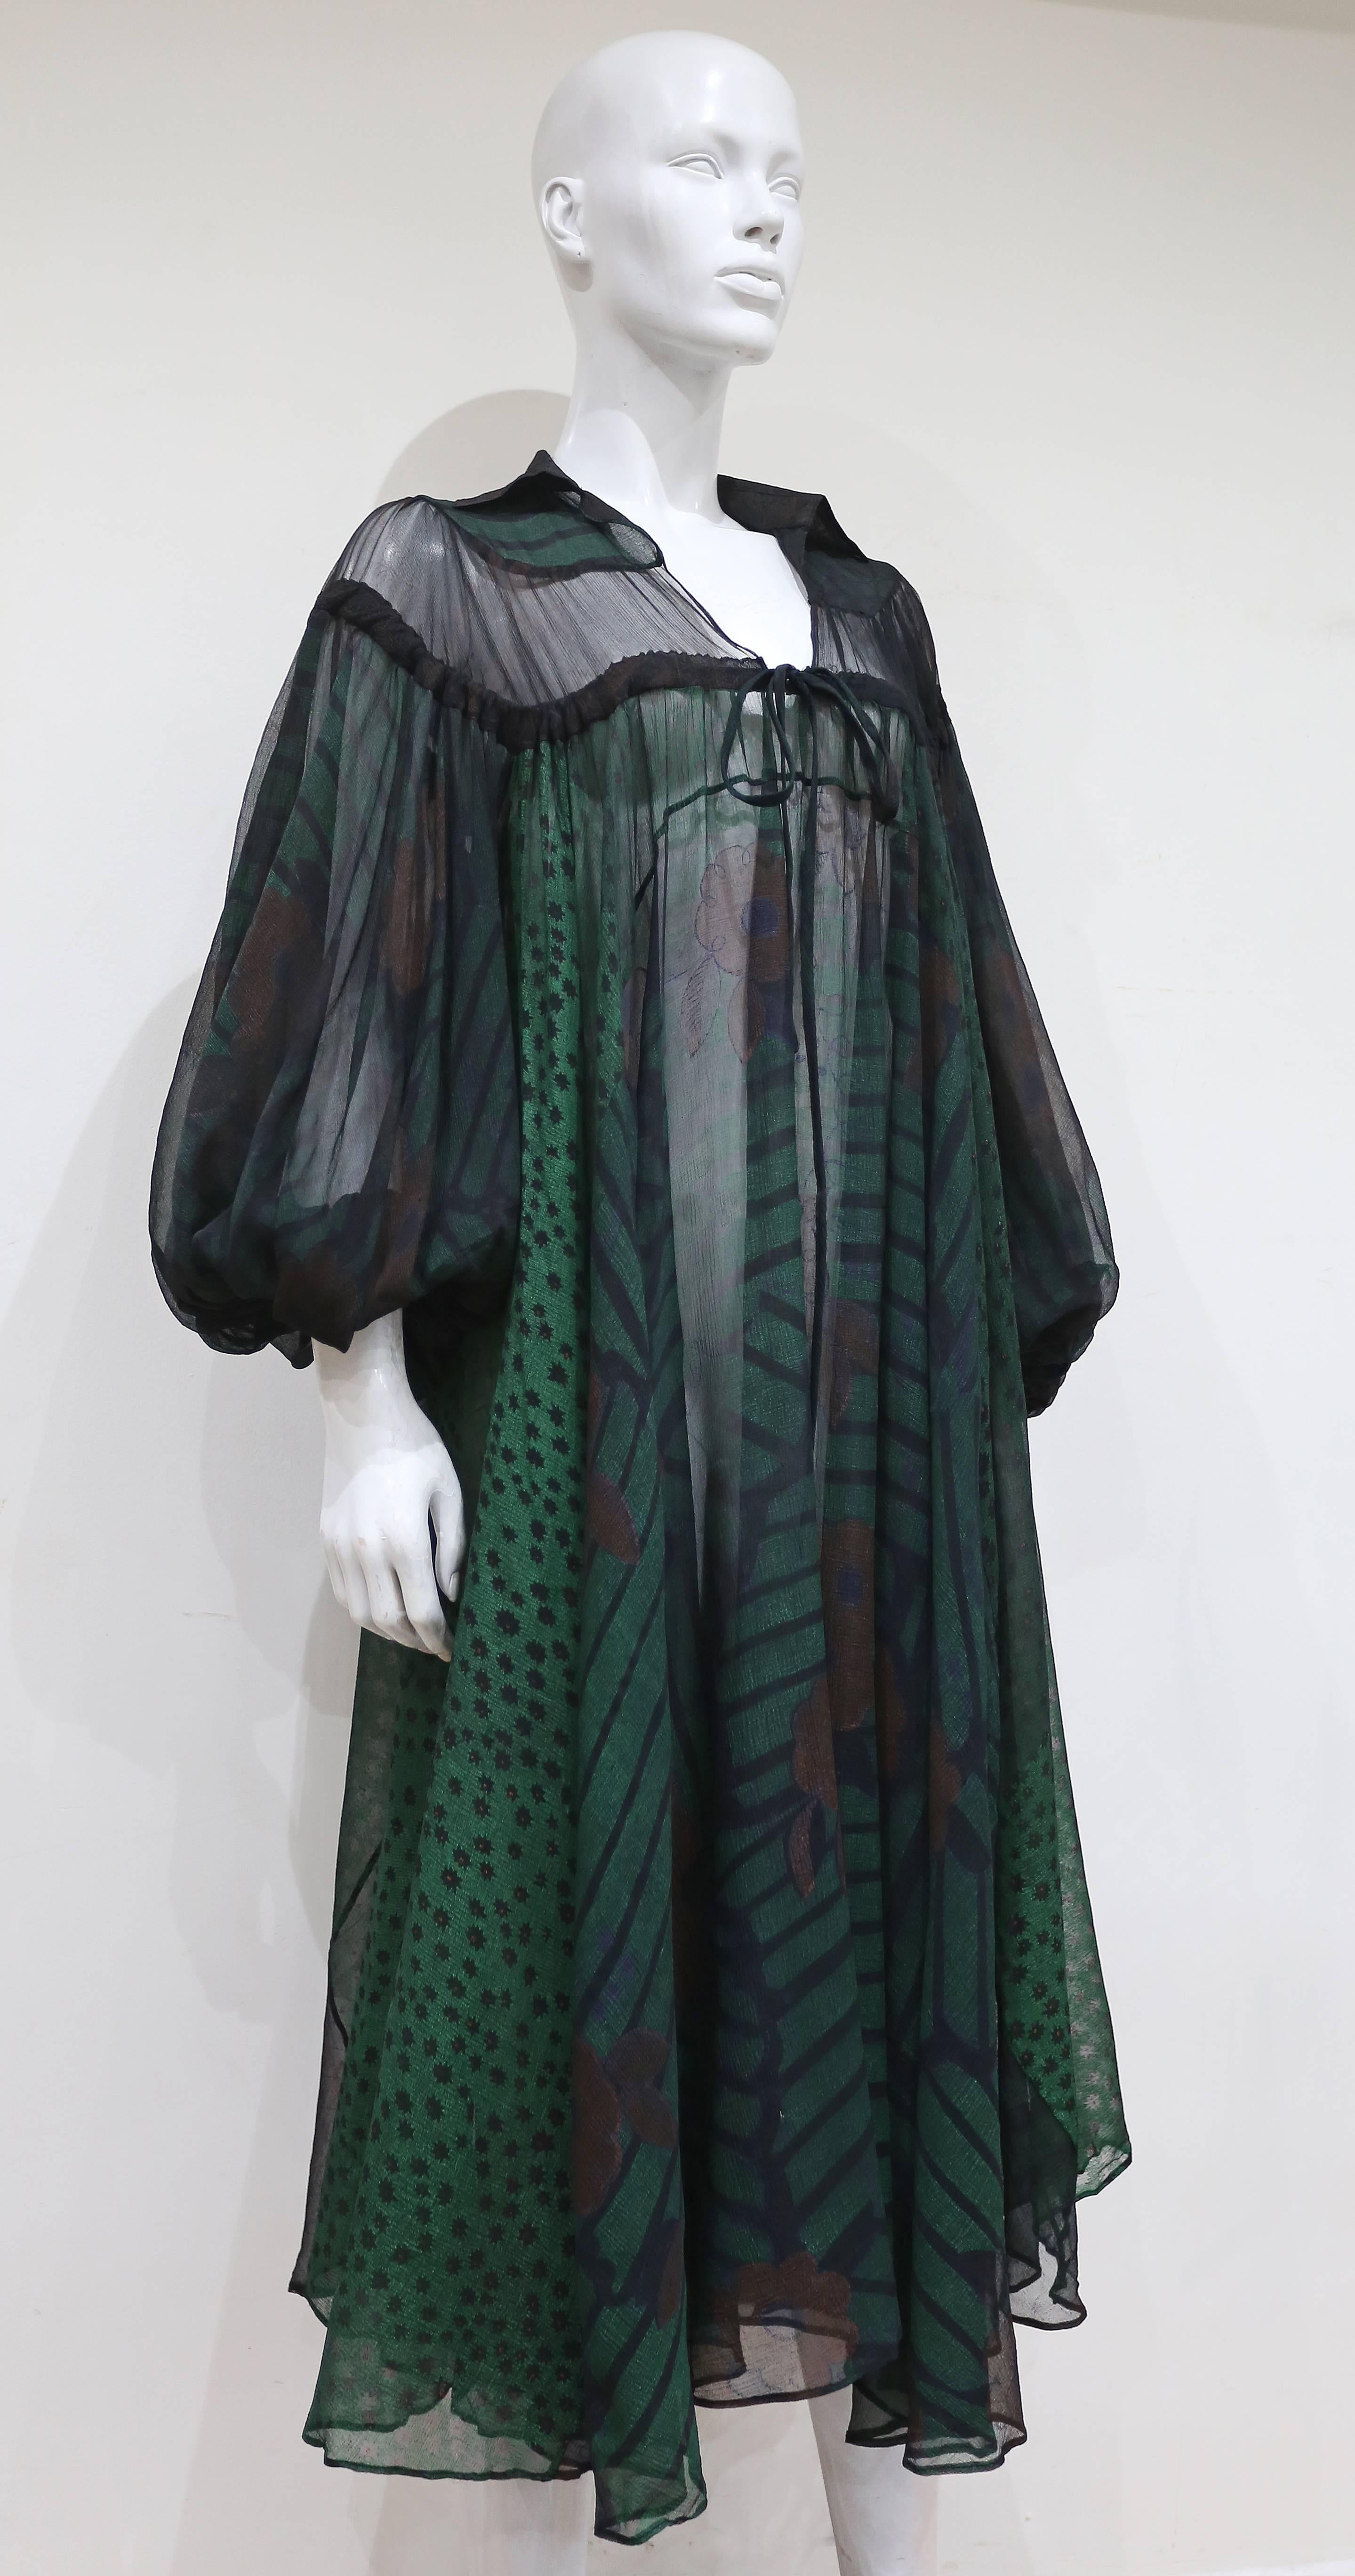 Ossie Clark extraordinary chiffon dress with Celia Birtwell print, c. 1968 - 69 2